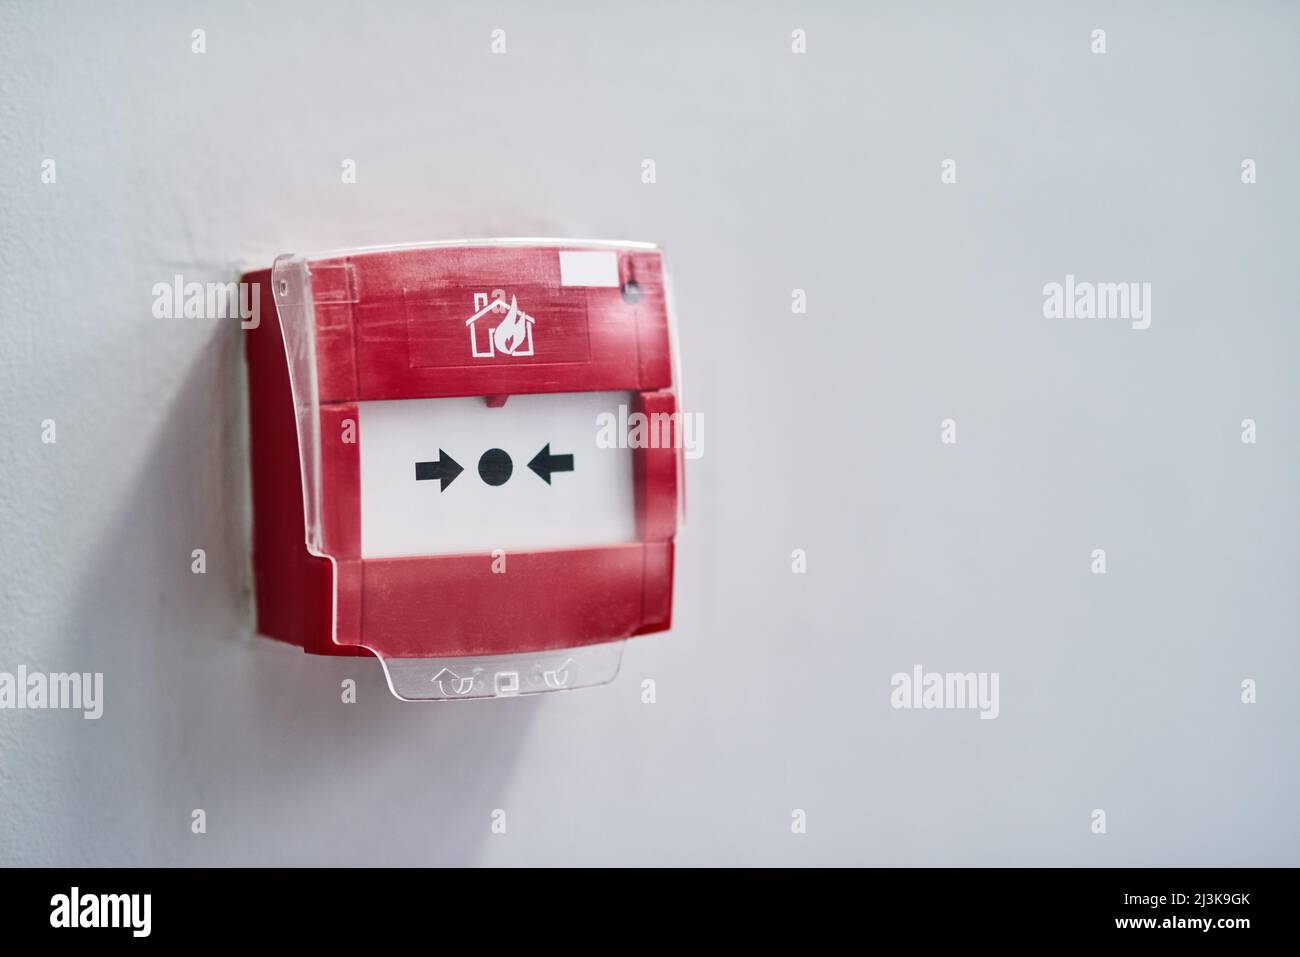 Alarm auslösen. Aufnahme eines Feueralarms an einer Wand. Stockfoto